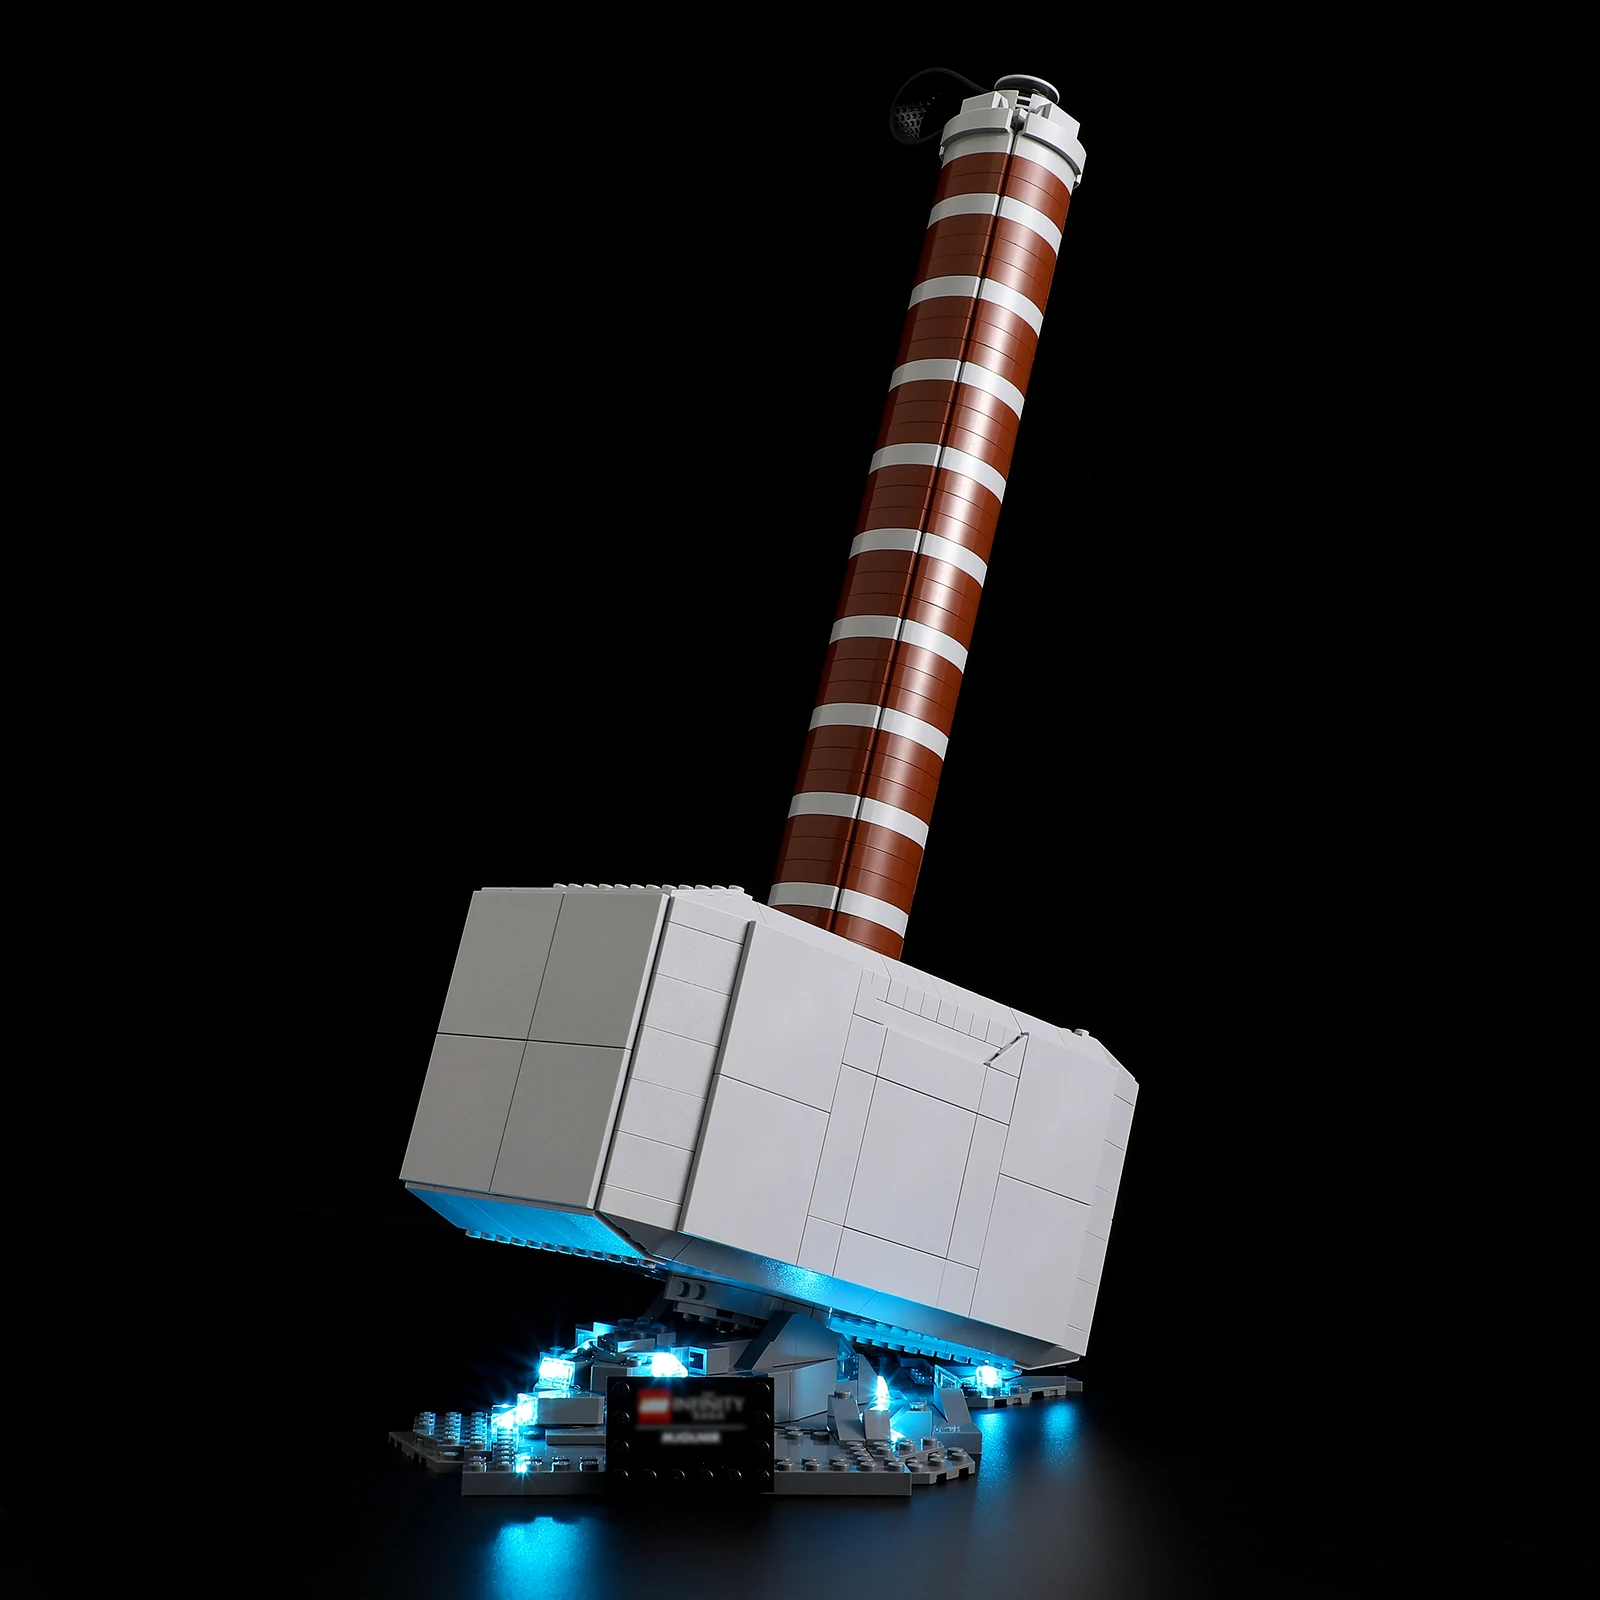 

Lightaling Led Light Kit for 76209 Thor's Hammer Building Blocks Set (NOT Include the Model) Bricks Toys for Children